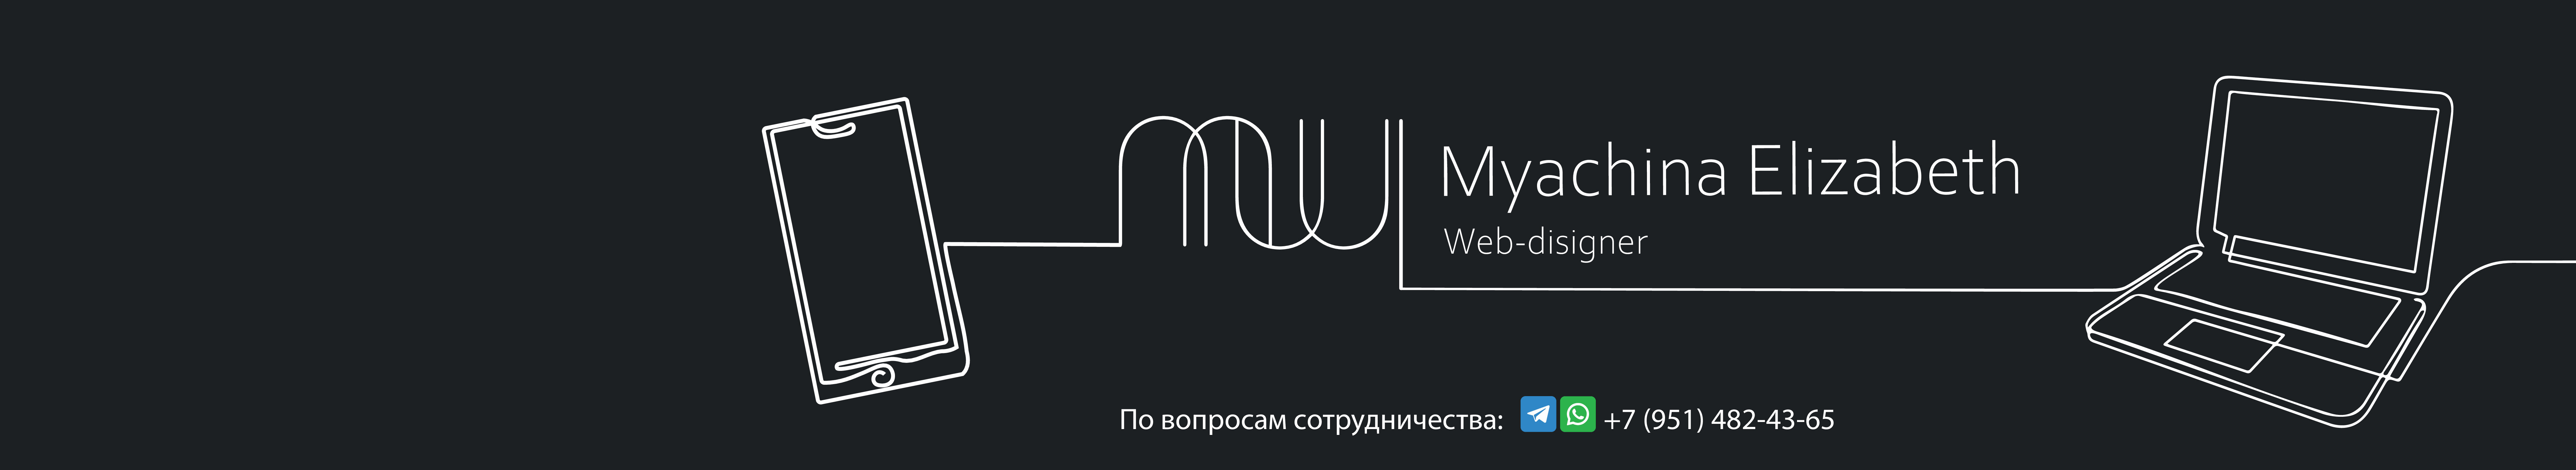 Елизавета Мячина's profile banner